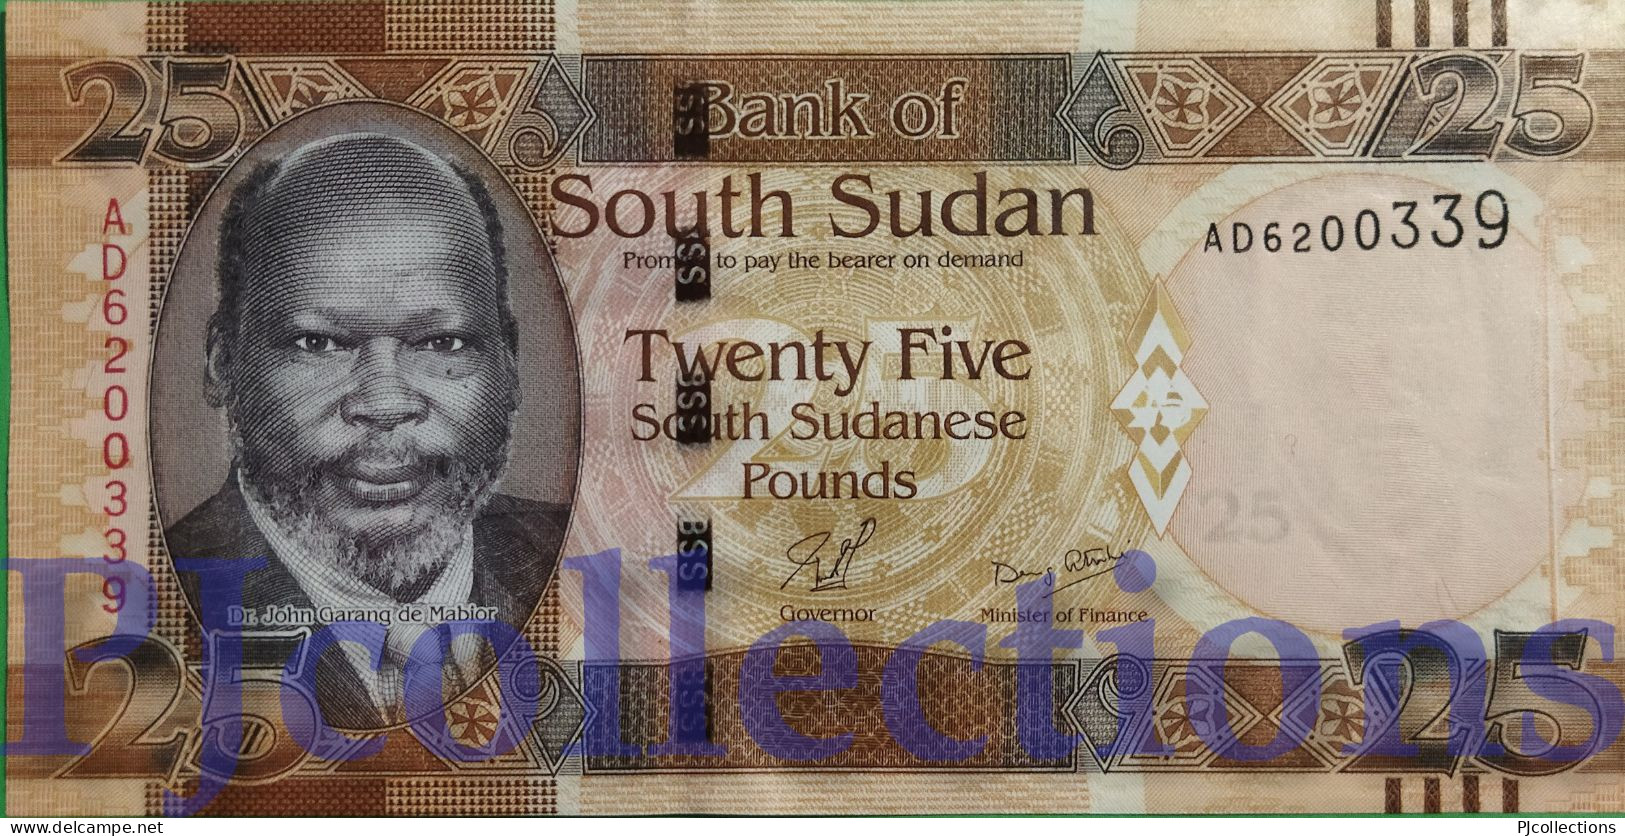 SOUTH SUDAN 25 POUNDS 2011 PICK 8 UNC - Sudan Del Sud